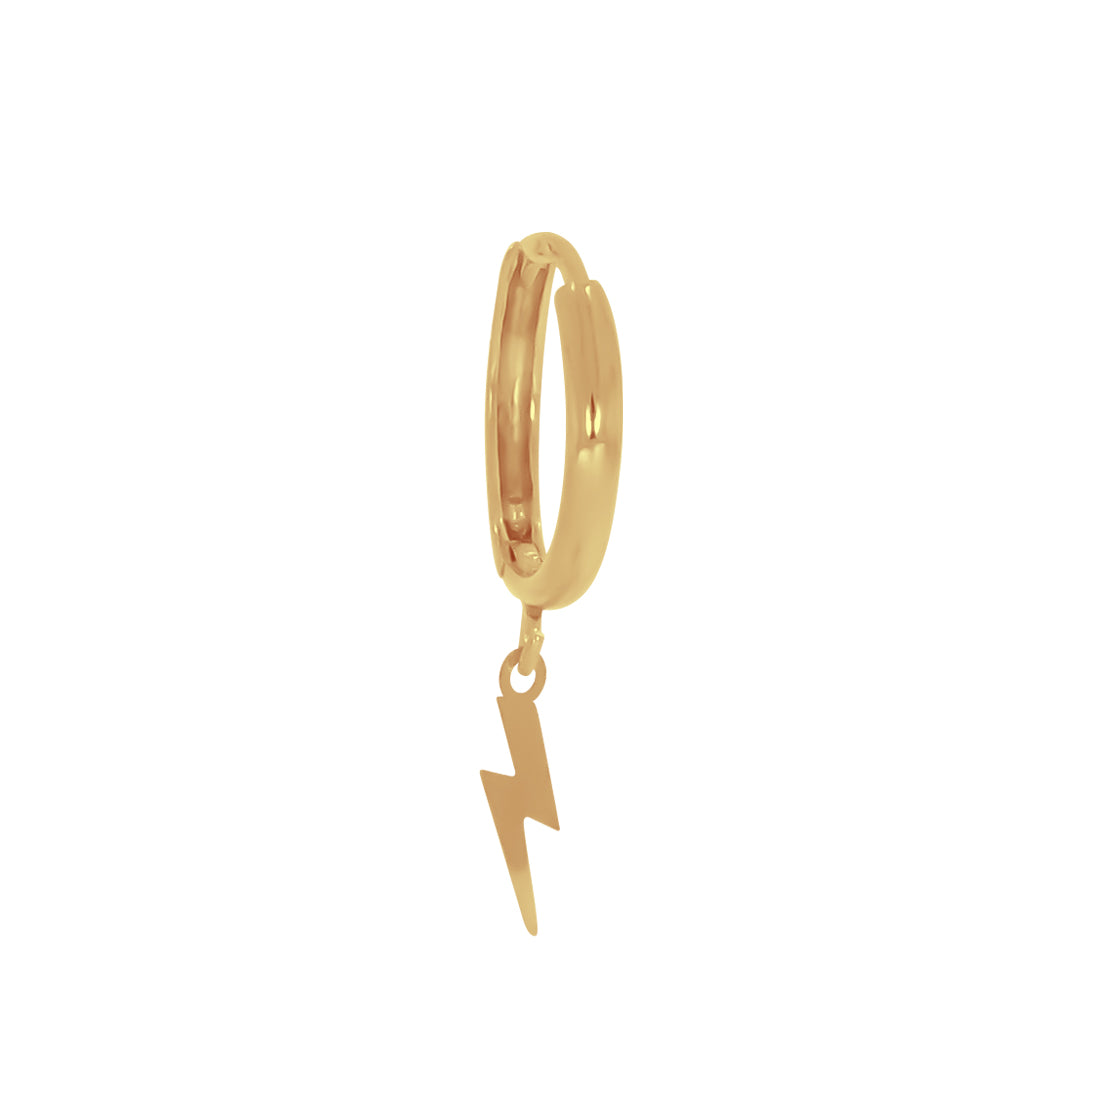 Piercing Oro 10k - Rayo Colgante Diámetro 1.4 cm